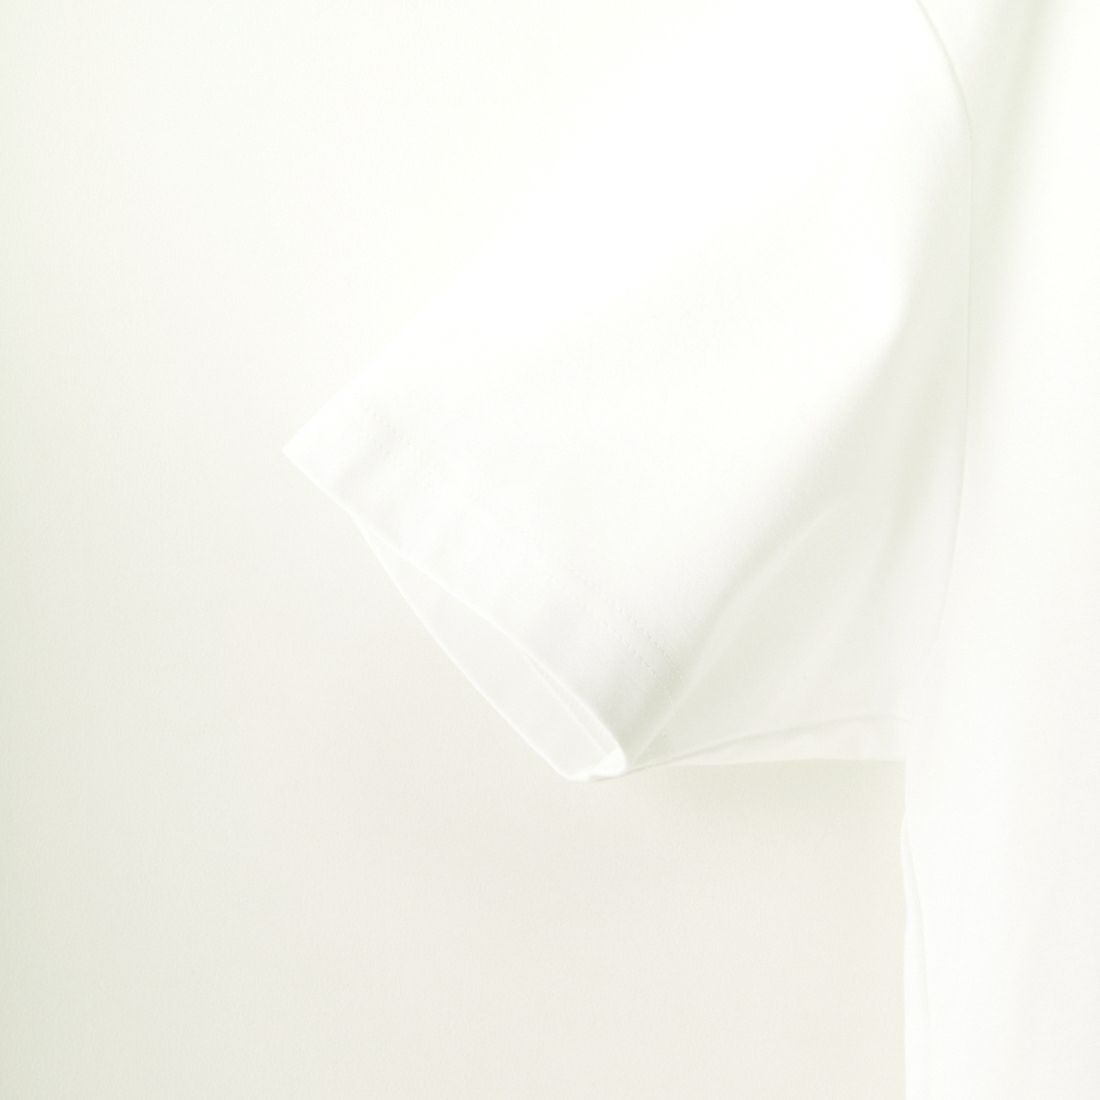 TATRAS [タトラス] ANICETO/アニチェート ロゴTシャツ [MTAT24S8261-M] WHITE